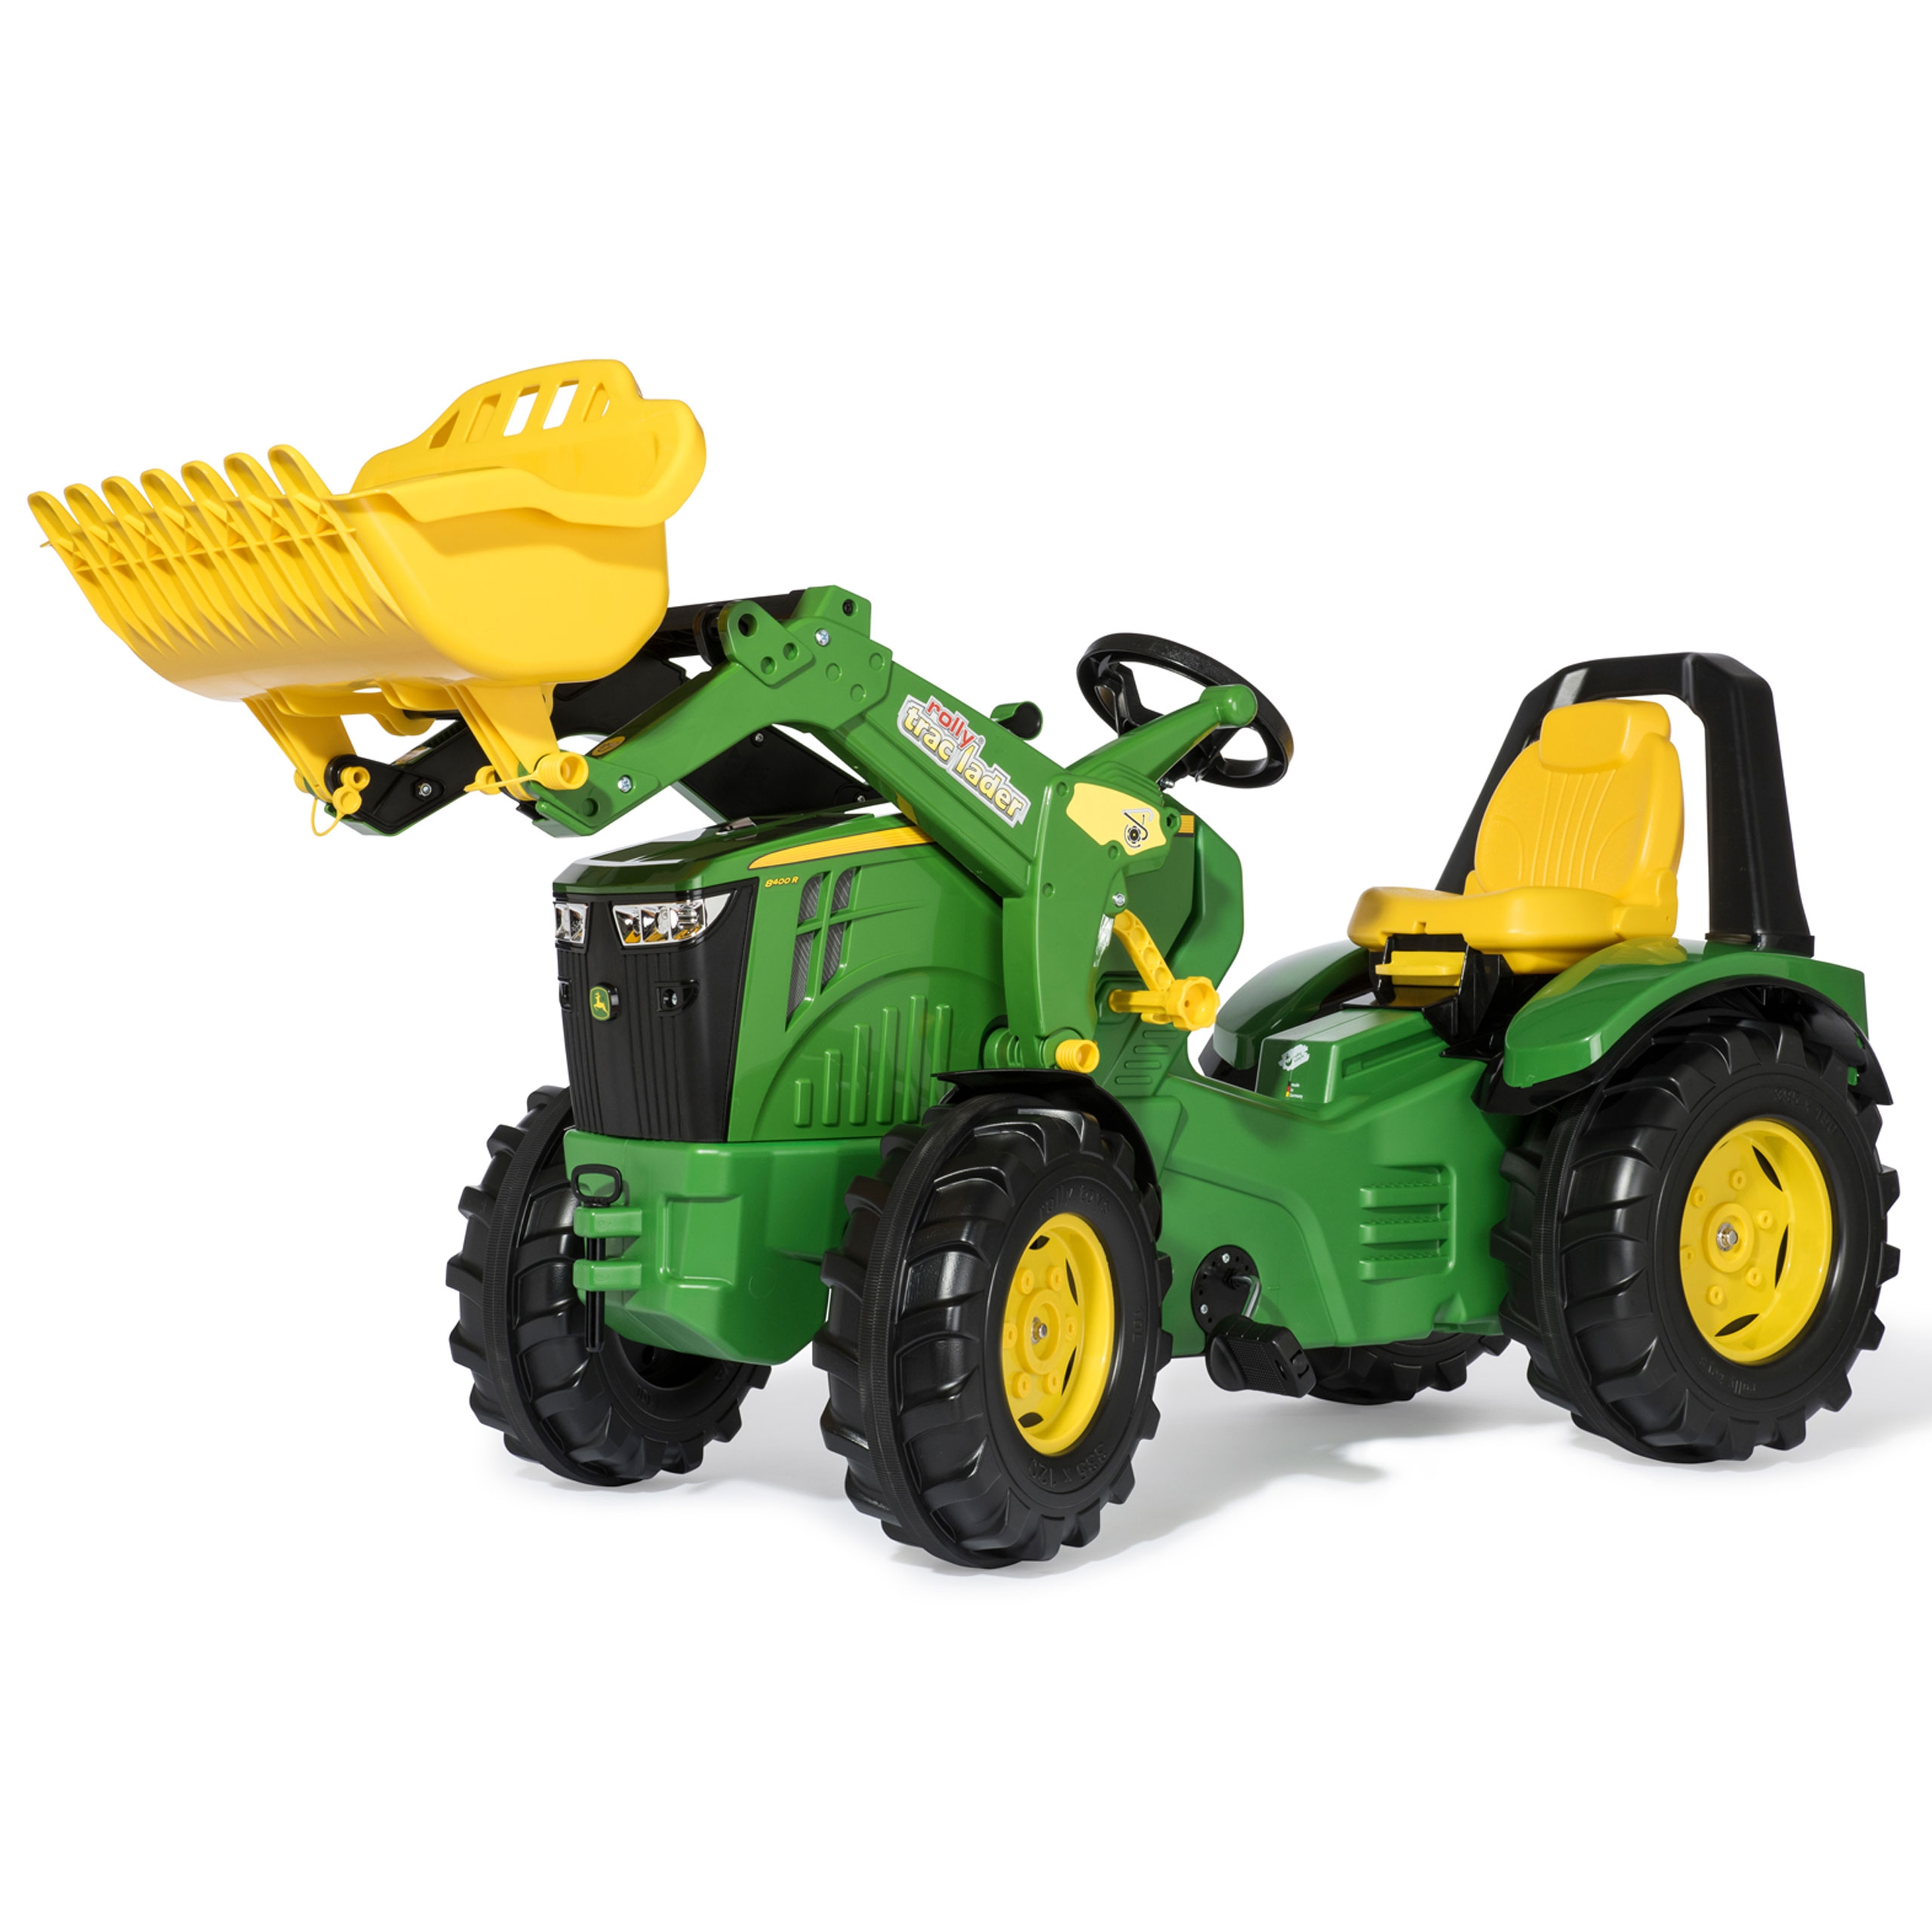 Deere traktor na pedały x-trac premium łyżka ciche koła Rolly Toys, zabawka dla dzieci, John